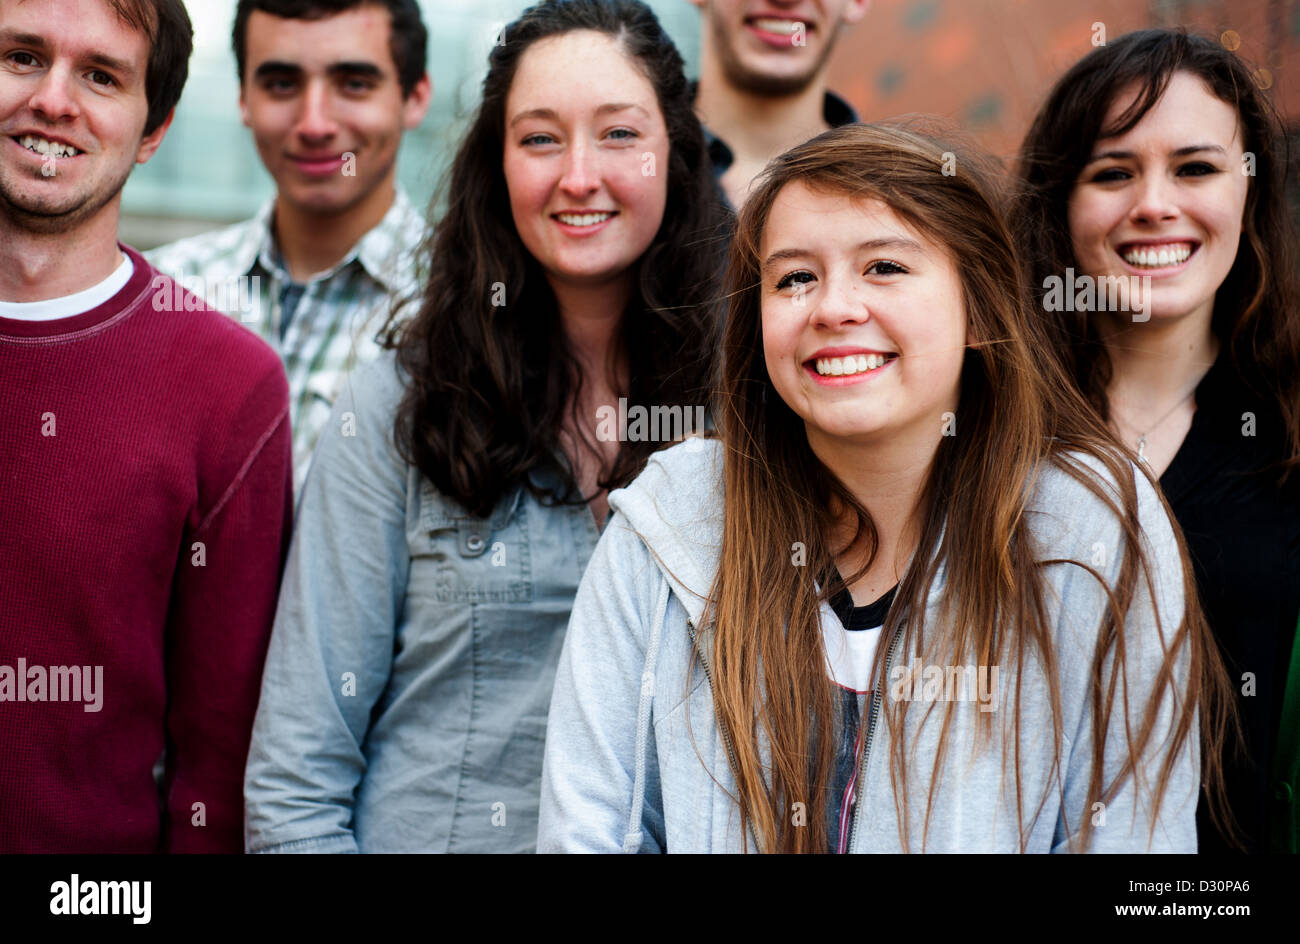 Groupe d'étudiants en dehors de smiling together Banque D'Images